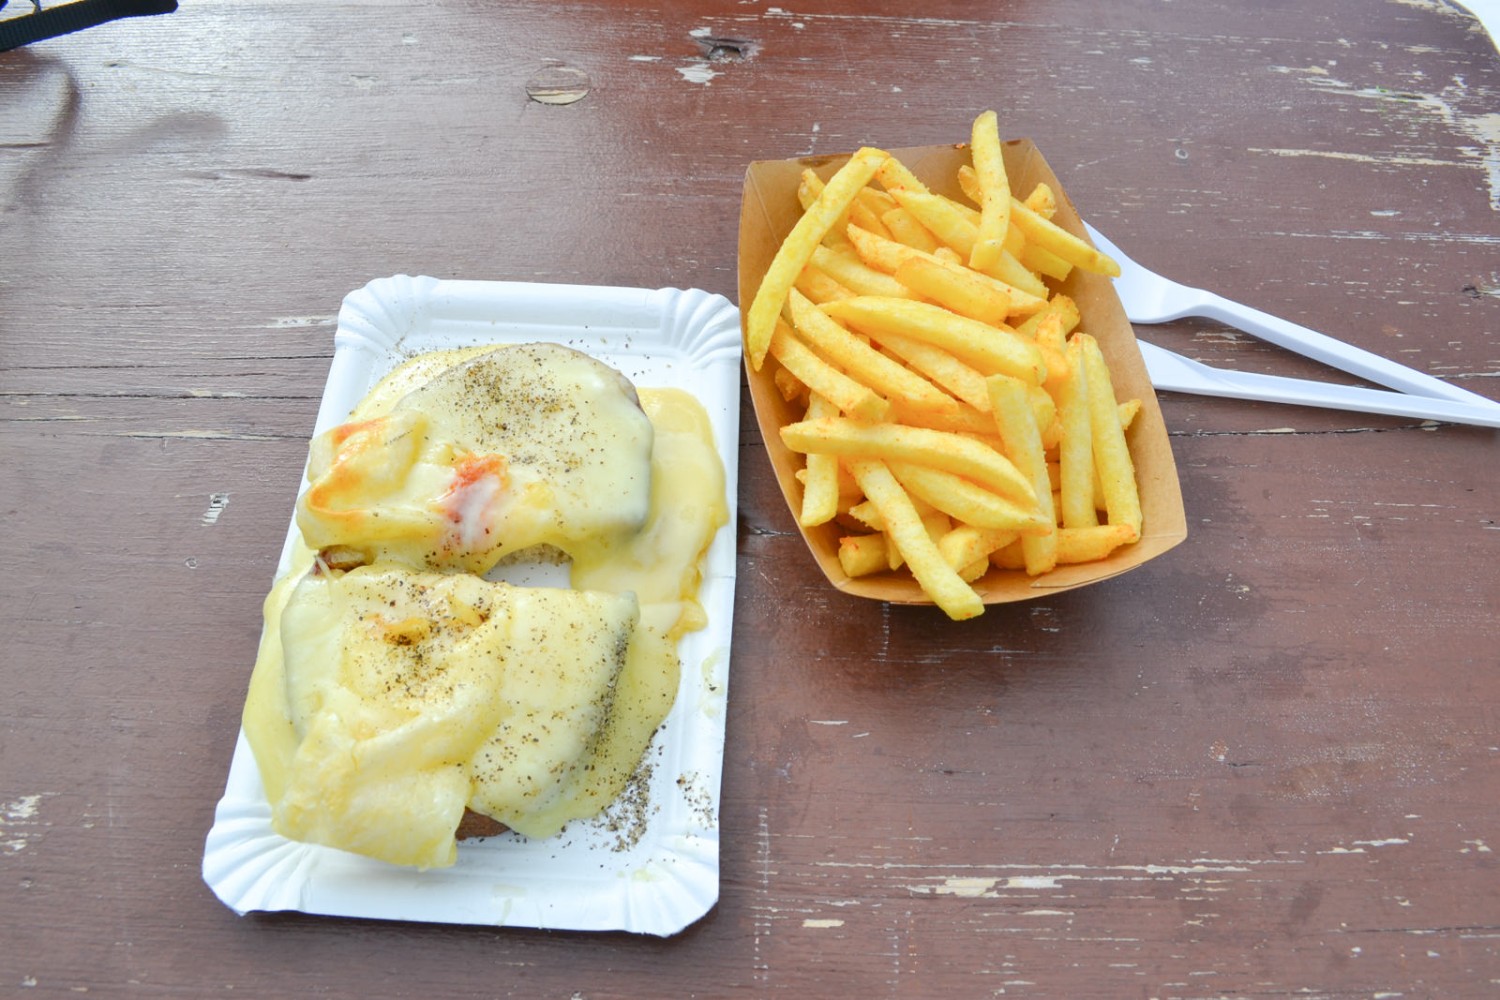 L’odeur de pommes frites et de croûtes au fromage accompagne les randonneurs déjà bien avant Bidmi.